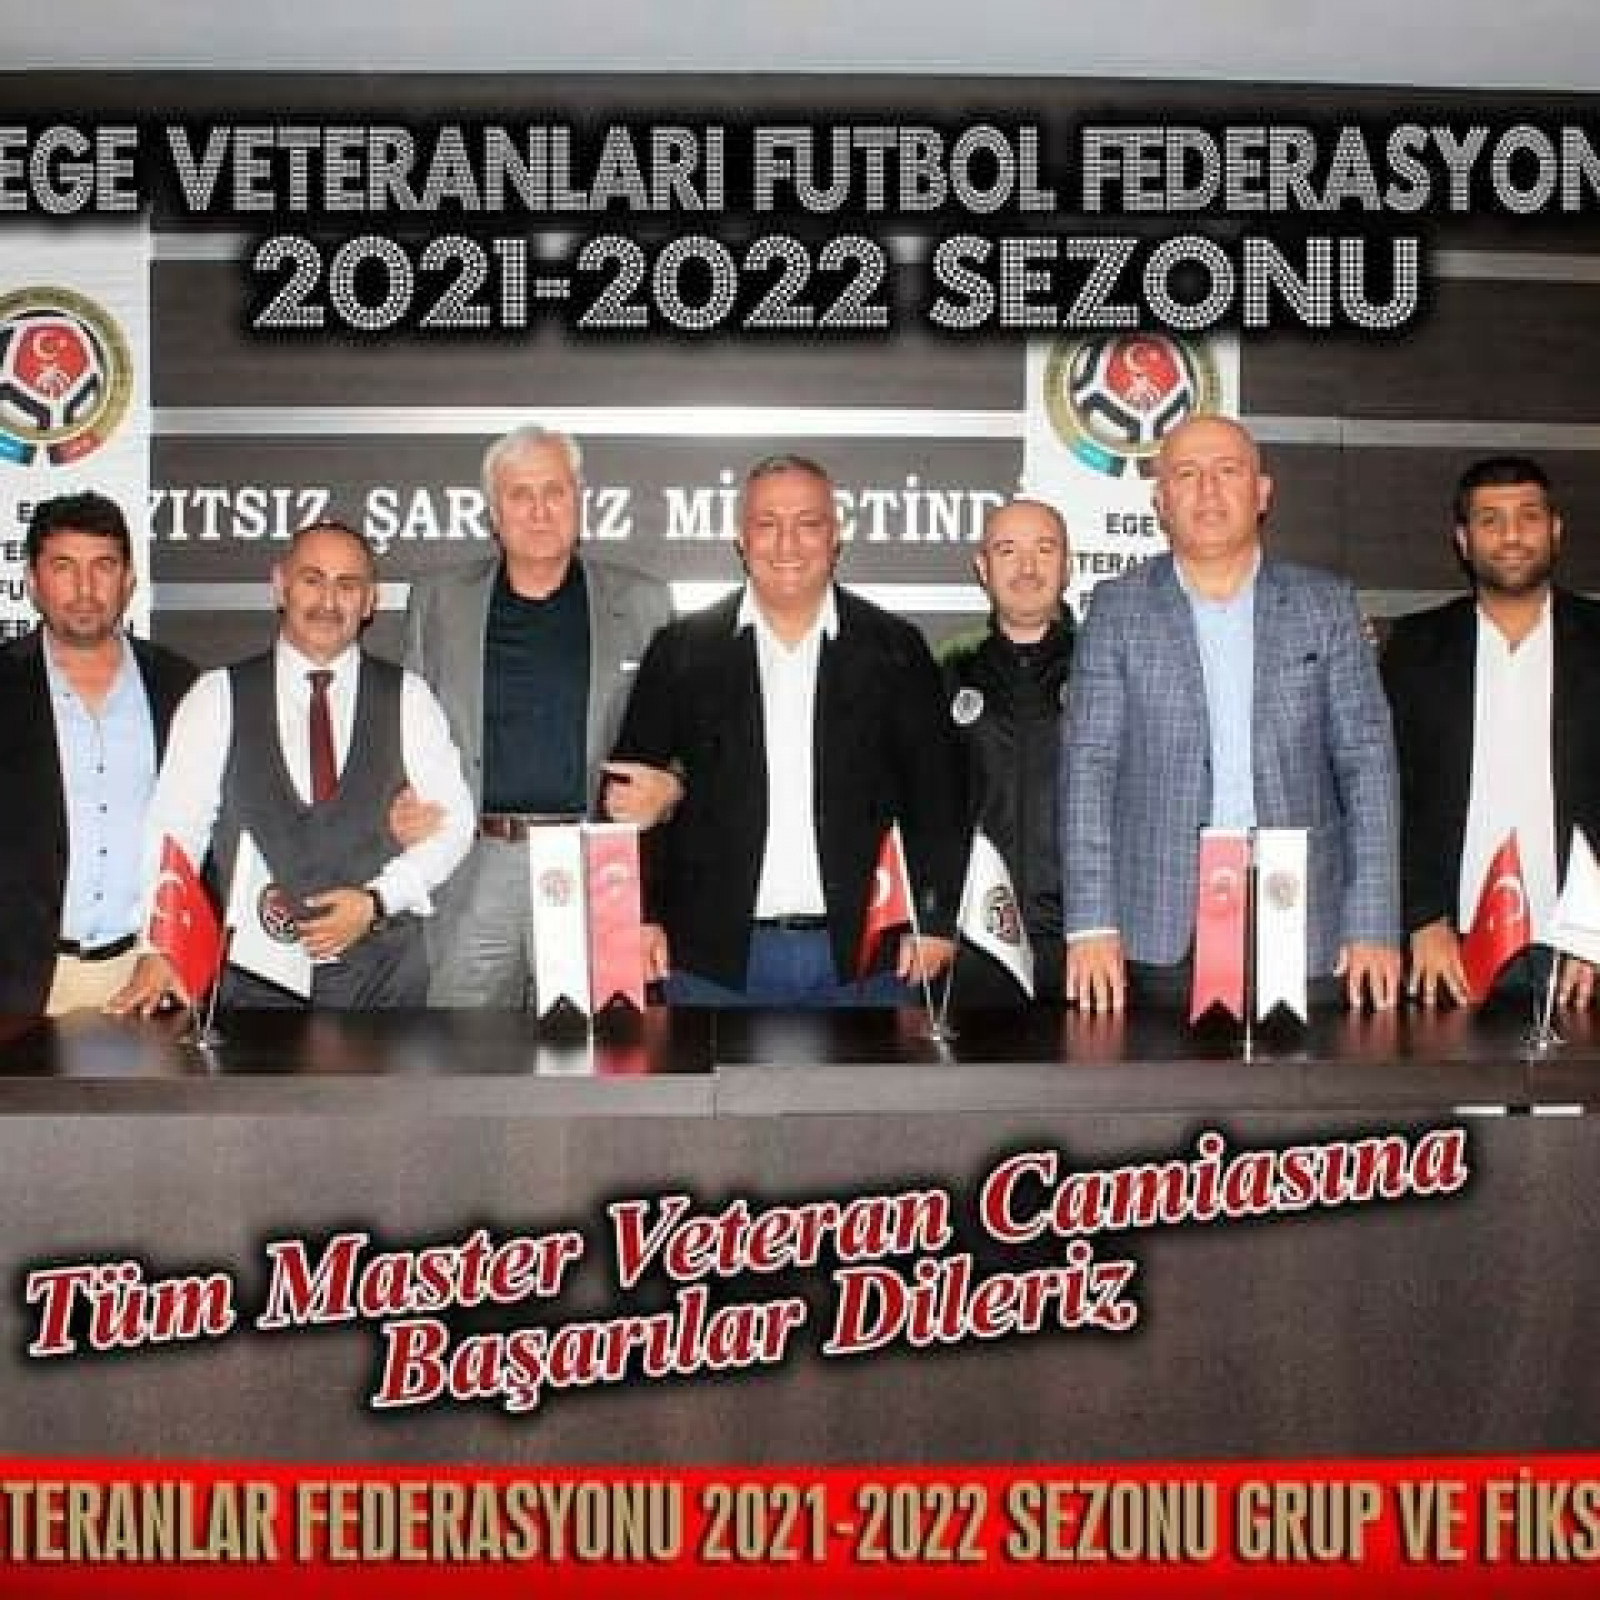 EGE VETERANLAR FUTBOL FEDERASYONU 2021-2022 SEZONU